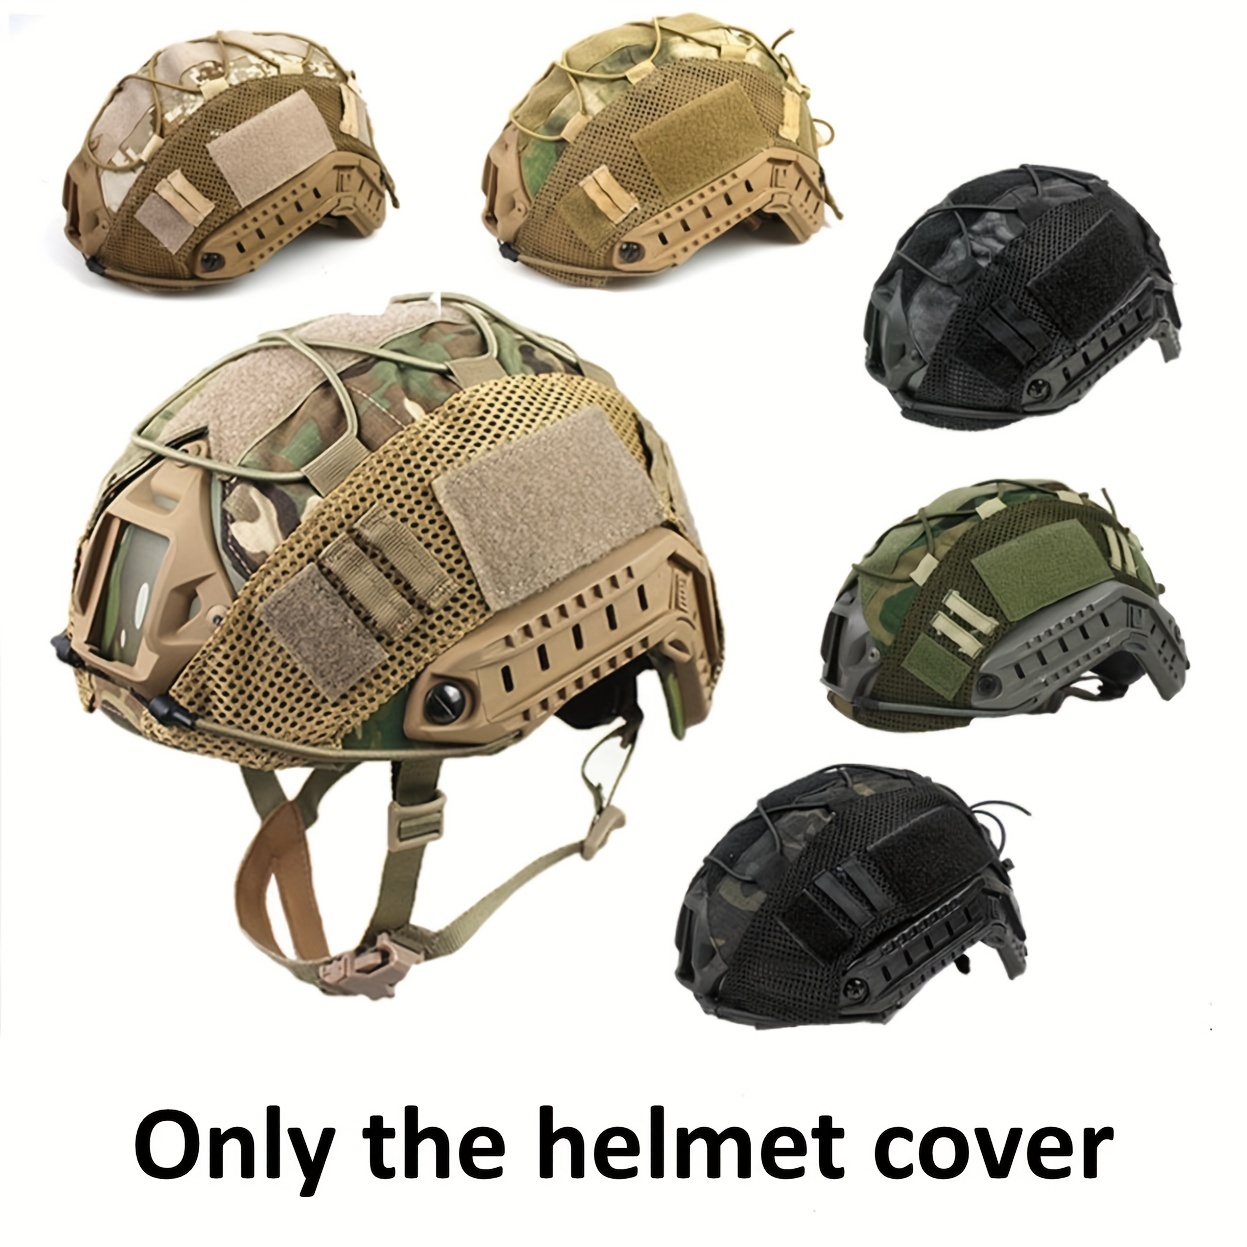 Cubierta de casco táctico para rápido mh pj bj casco airsoft paintball  cubierta de casco militar accesorios militares